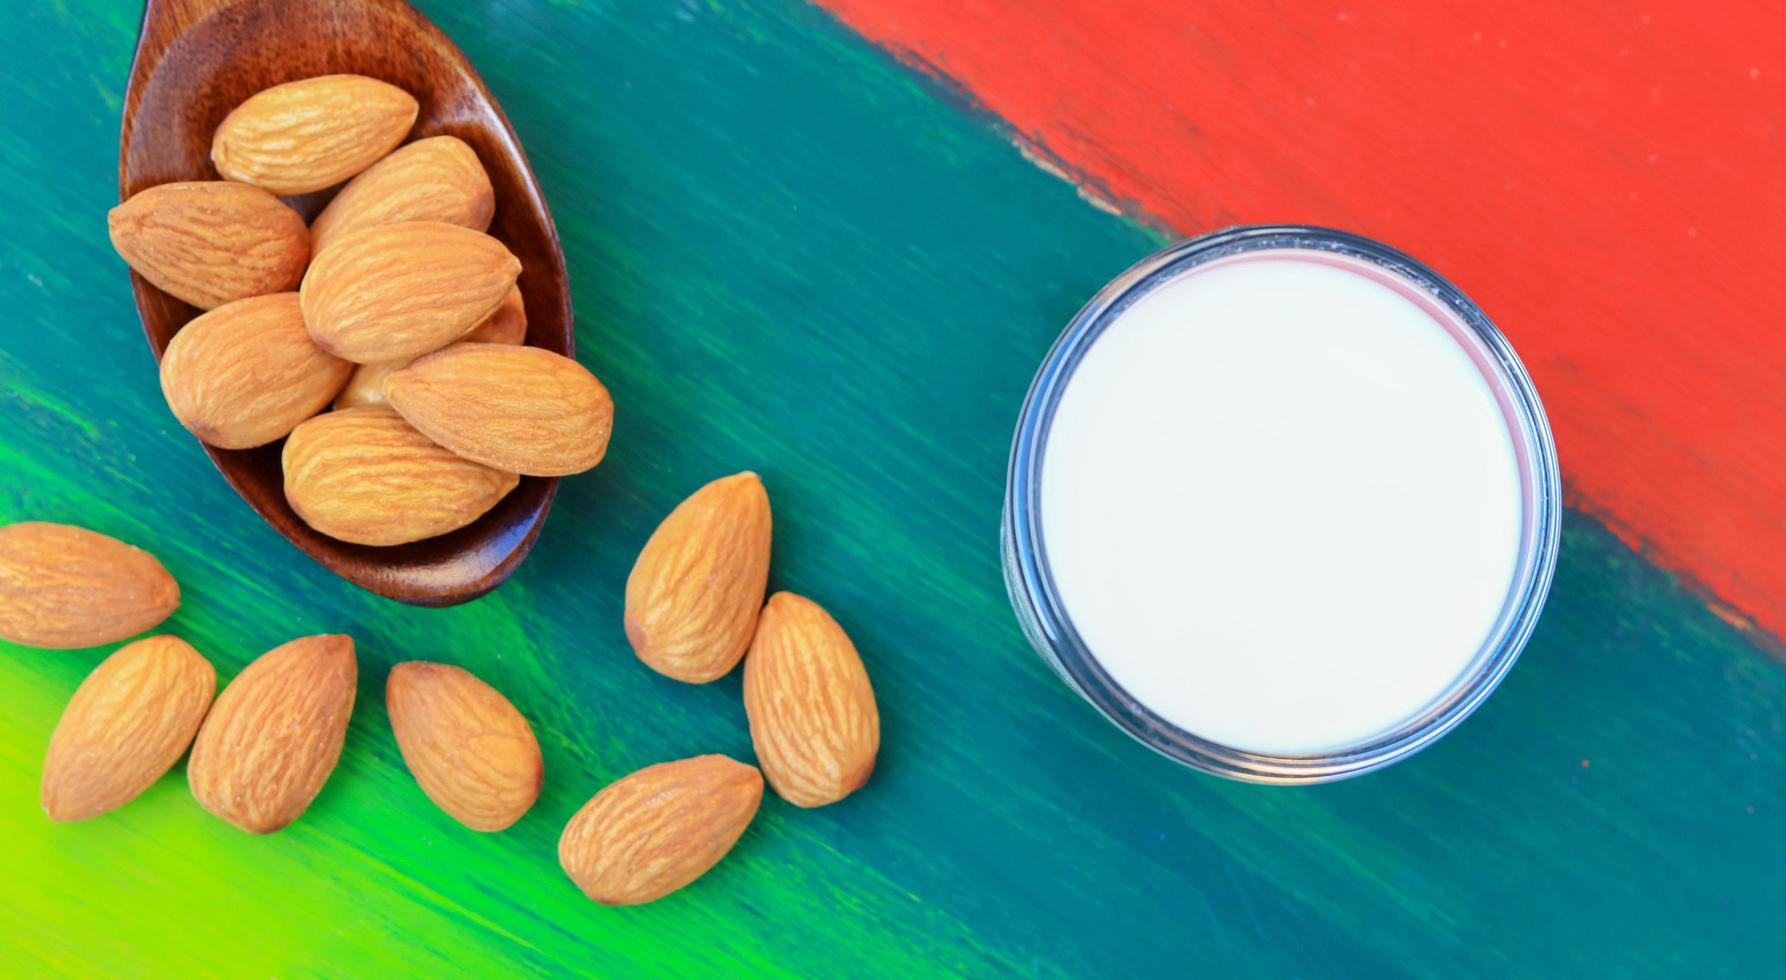 amêndoas e leite em um copo sobre um lindo piso de madeira natural colorida foto